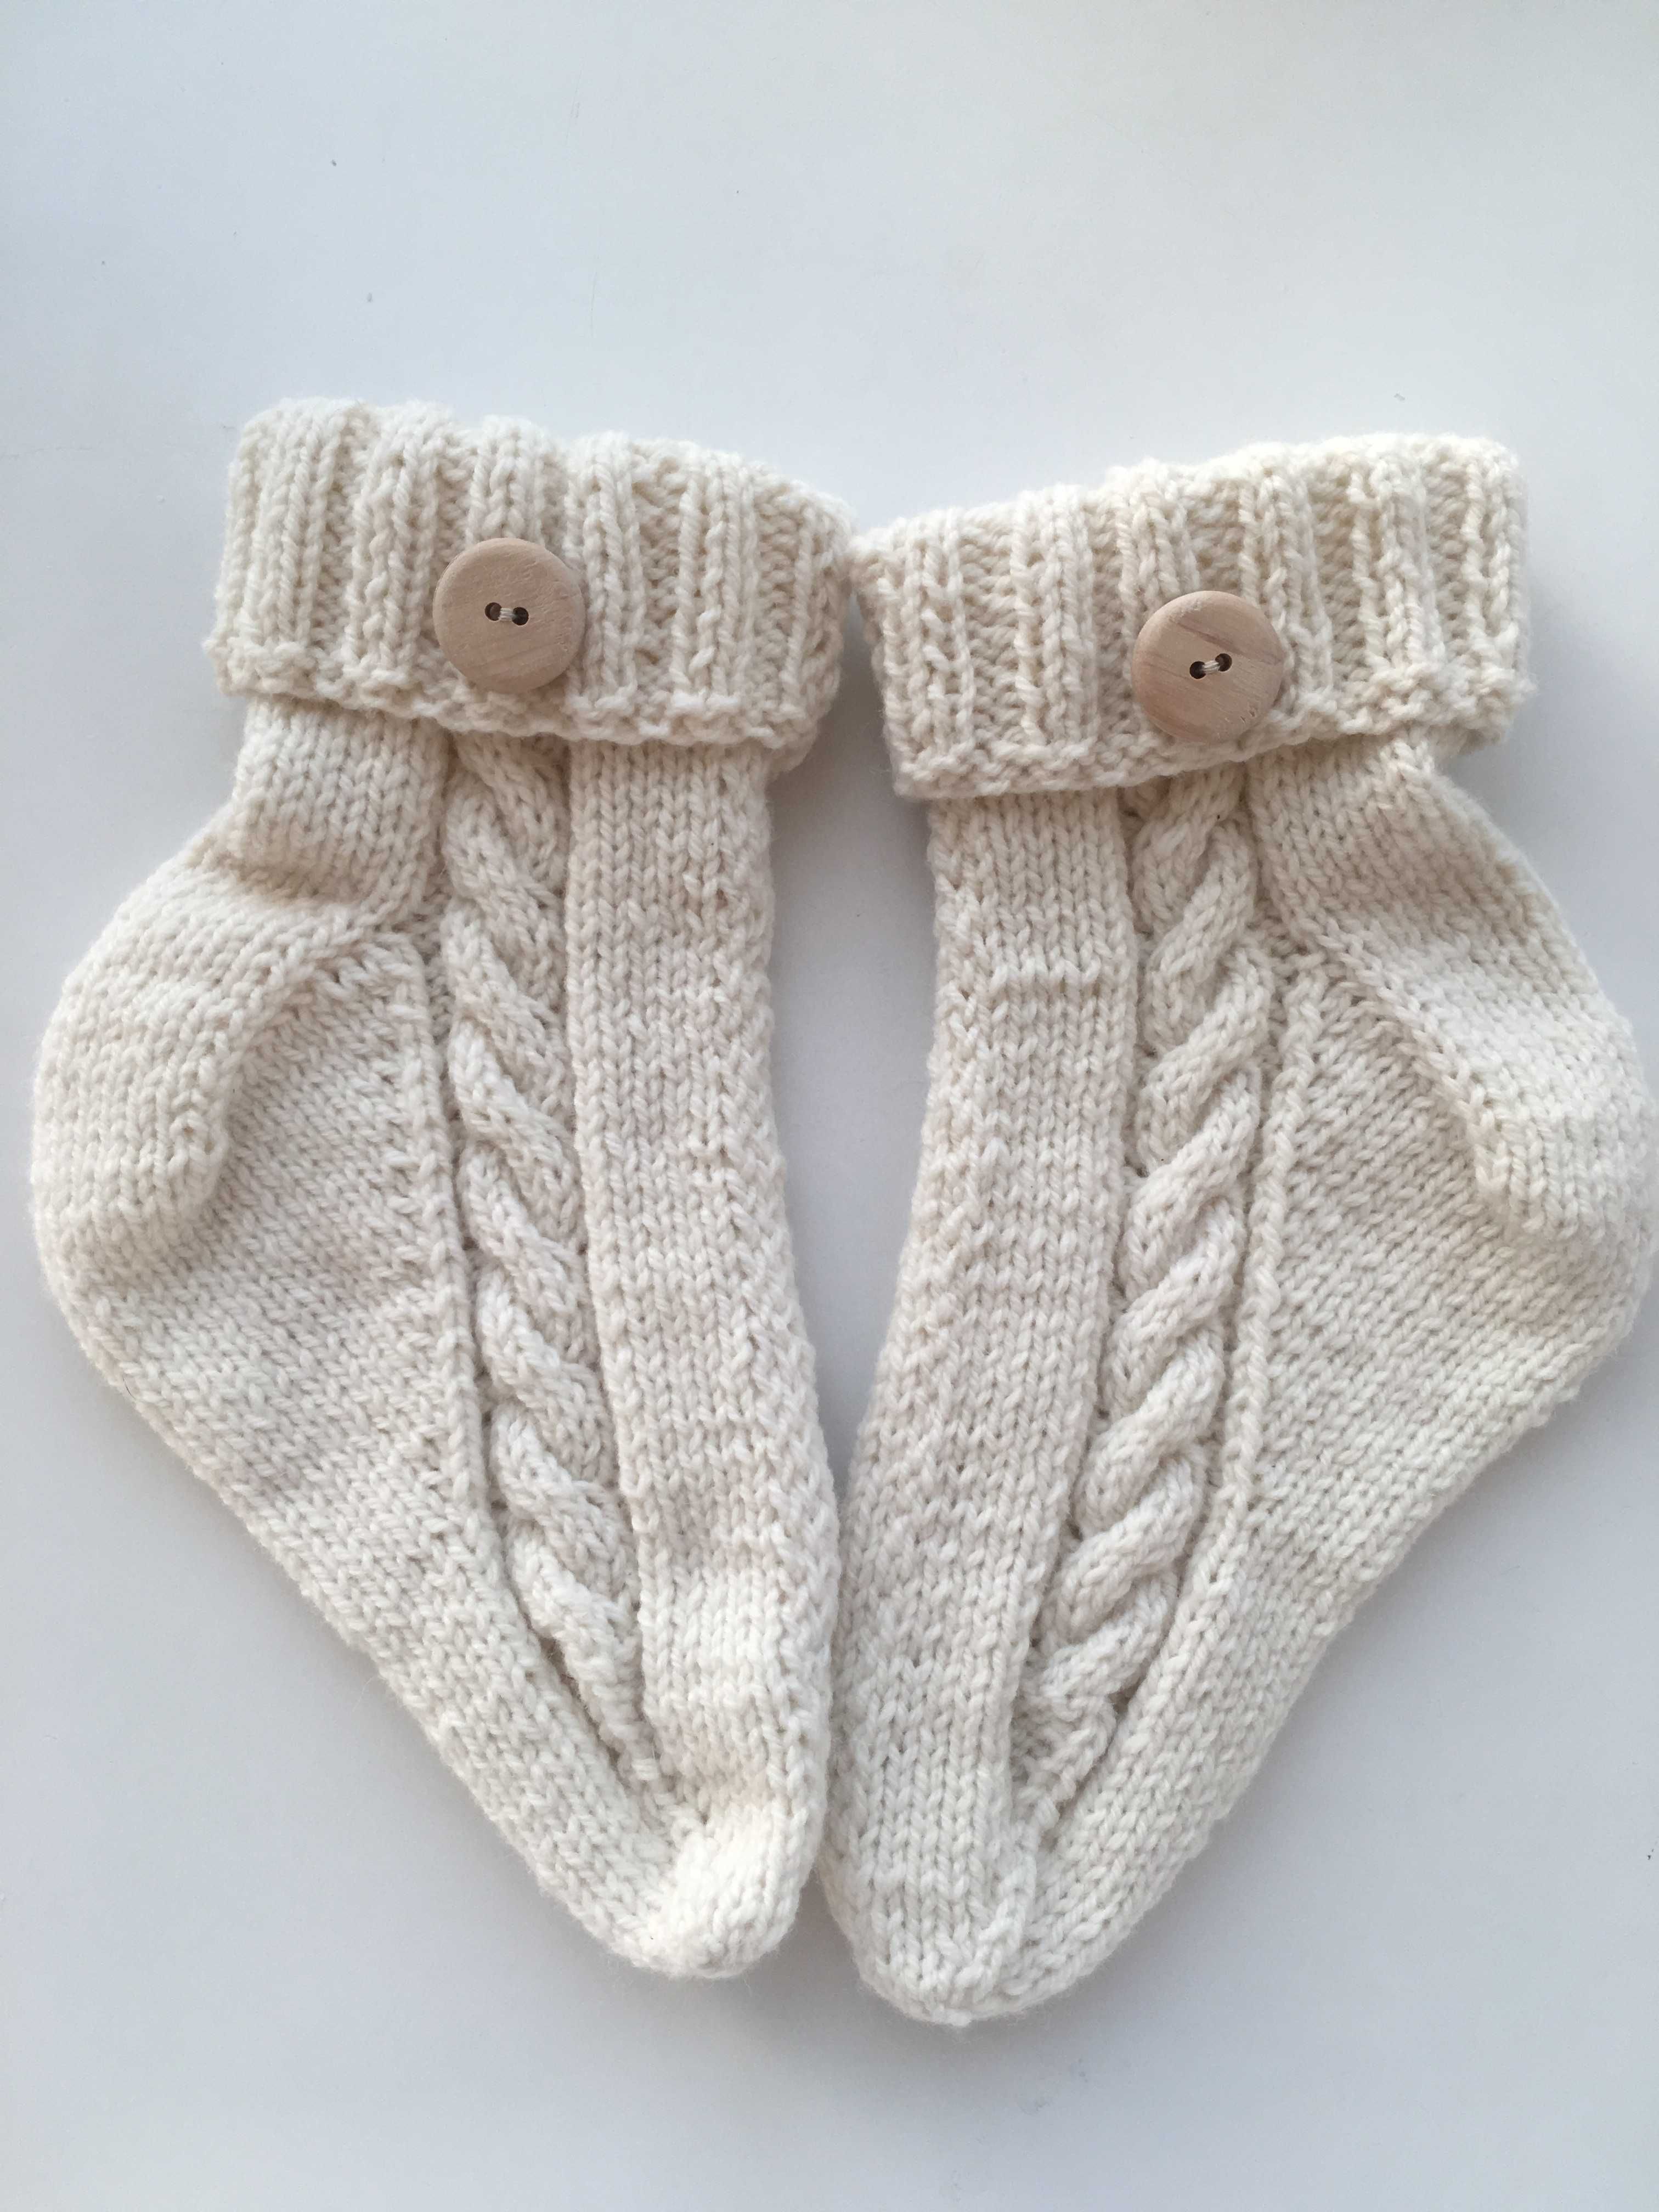 Ciorapi tricotati manual/din lana alba cu nasture din lemn